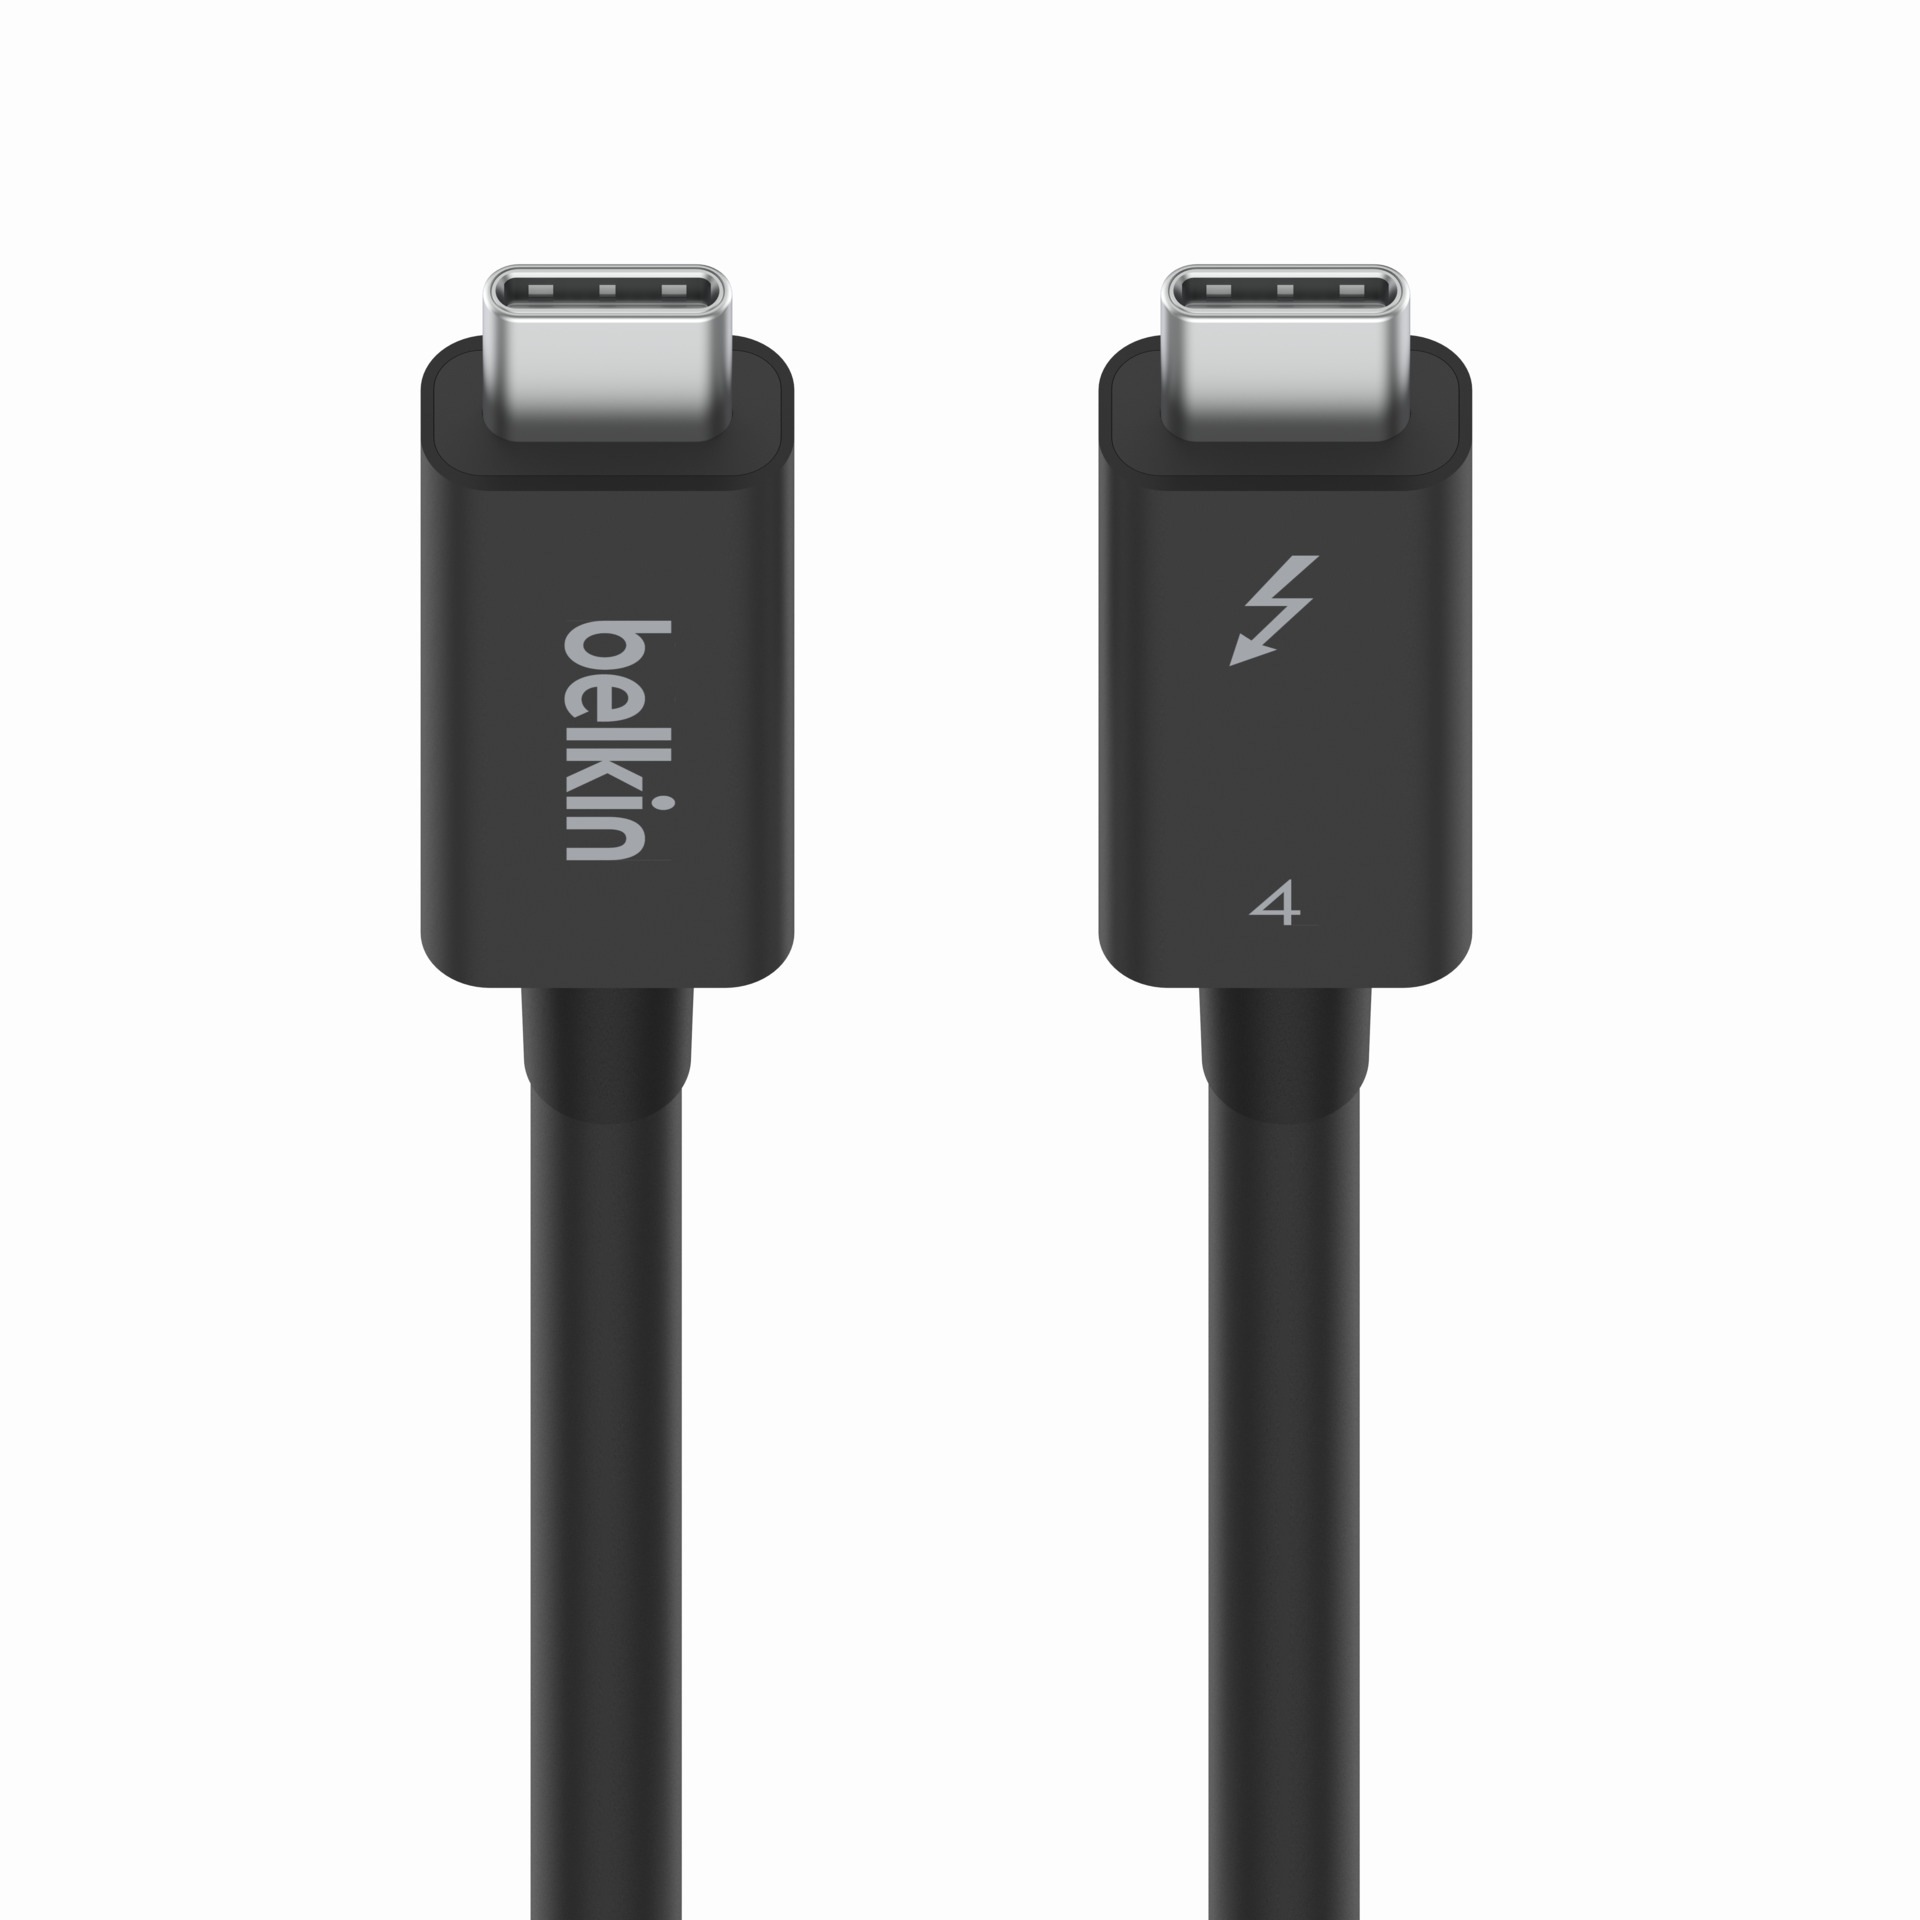 Belkin USB-Kabel »Connect Thunderbolt 4-Kabel«, USB-C, 200 cm, 2 m, aktiv, unterstützt gleichzeitig Stromversorgung, Datenübertragung